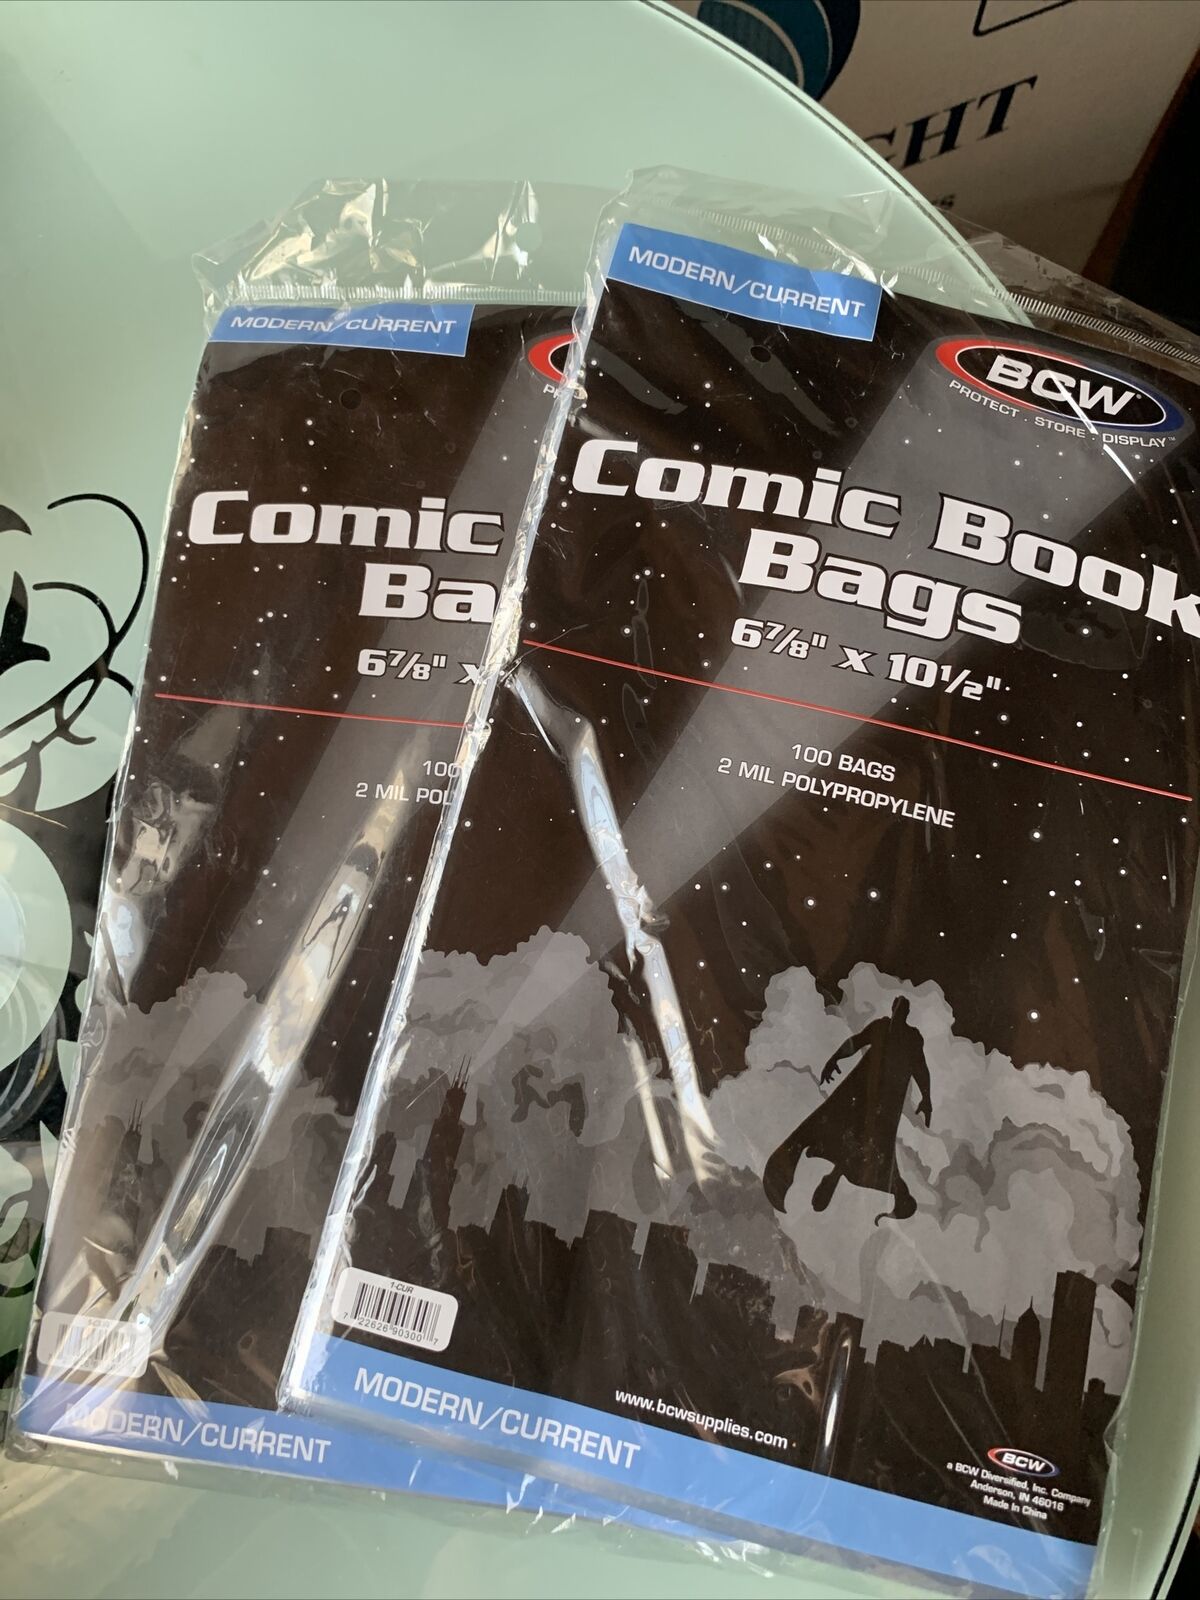 COMIC BOOK BAGS 2 MIL (Lot of 2 Pkgs - 100 per Pkg)  Part # 1-CUR